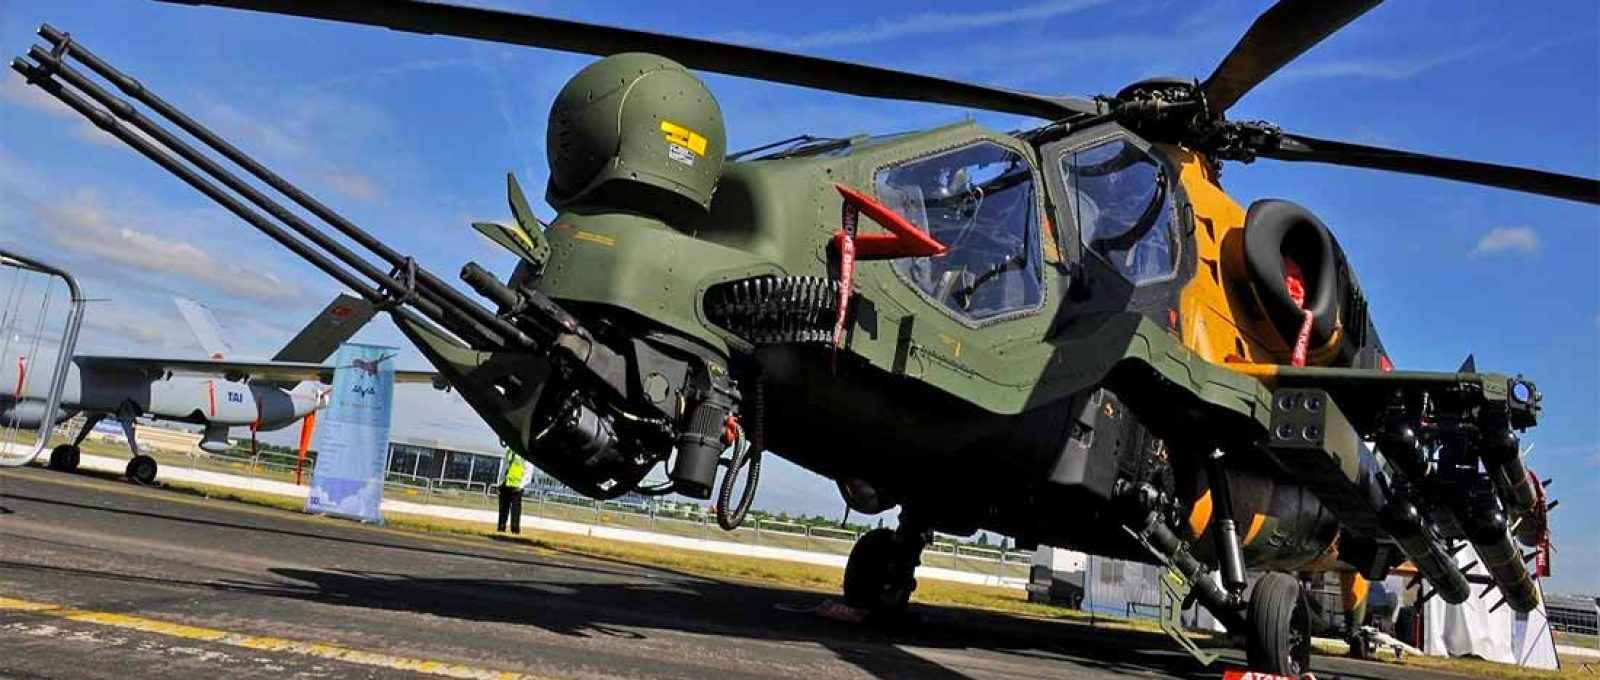 O T129, de 5 toneladas, é um helicóptero bimotor multifunção produzido sob licença da empresa ítalo-britânica AgustaWestland e baseado no A129 Mangusta (Foto: Micaiah Anthony/USAF).